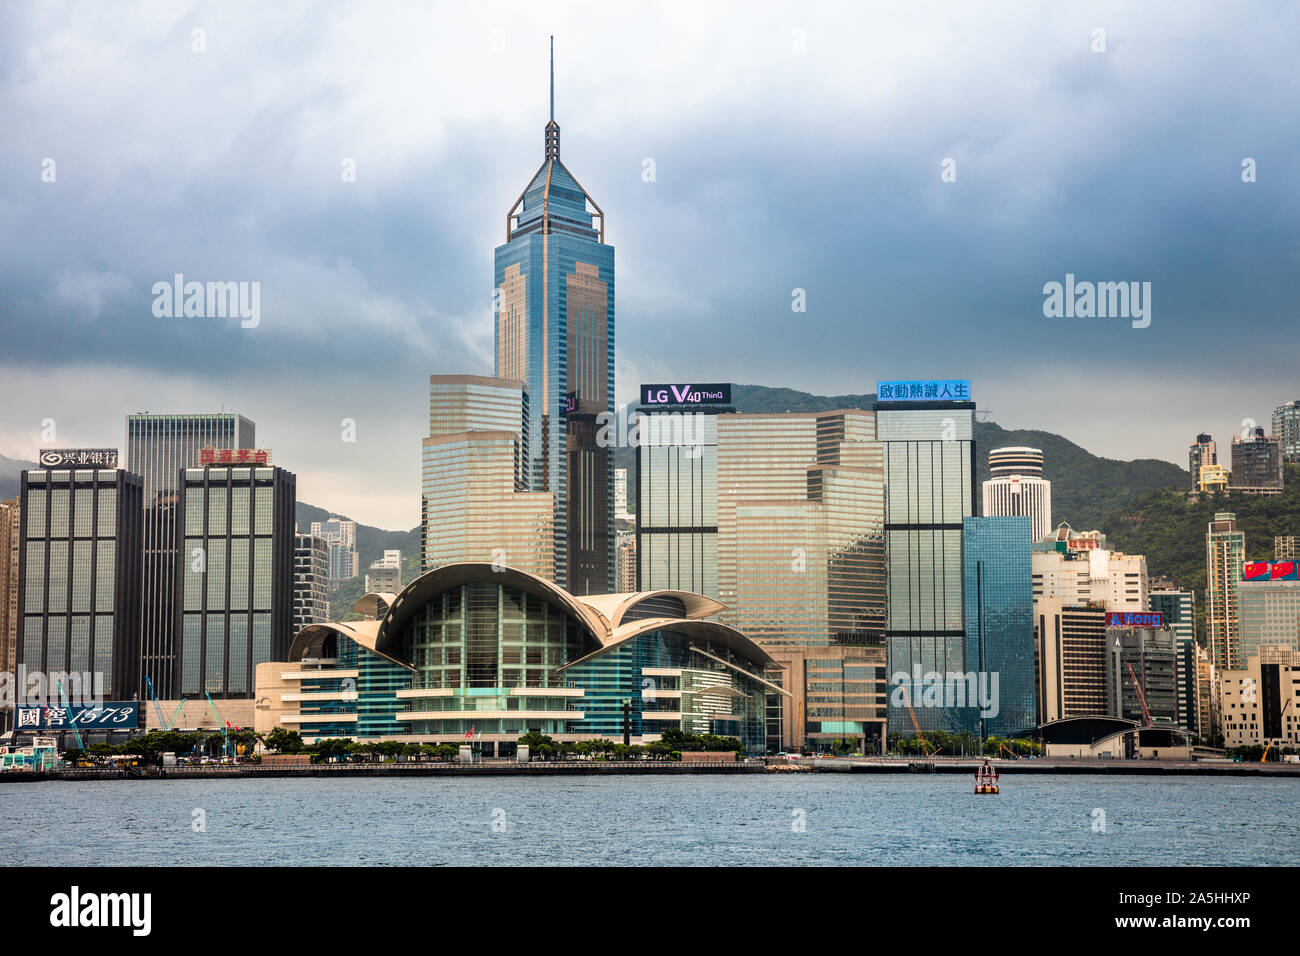 L'île de Hong Kong Skyline de Tsim Sha Tsui, avec le Hong Kong Convention Centre à l'avant-plan et Central Plaza Tower dans le dos Banque D'Images